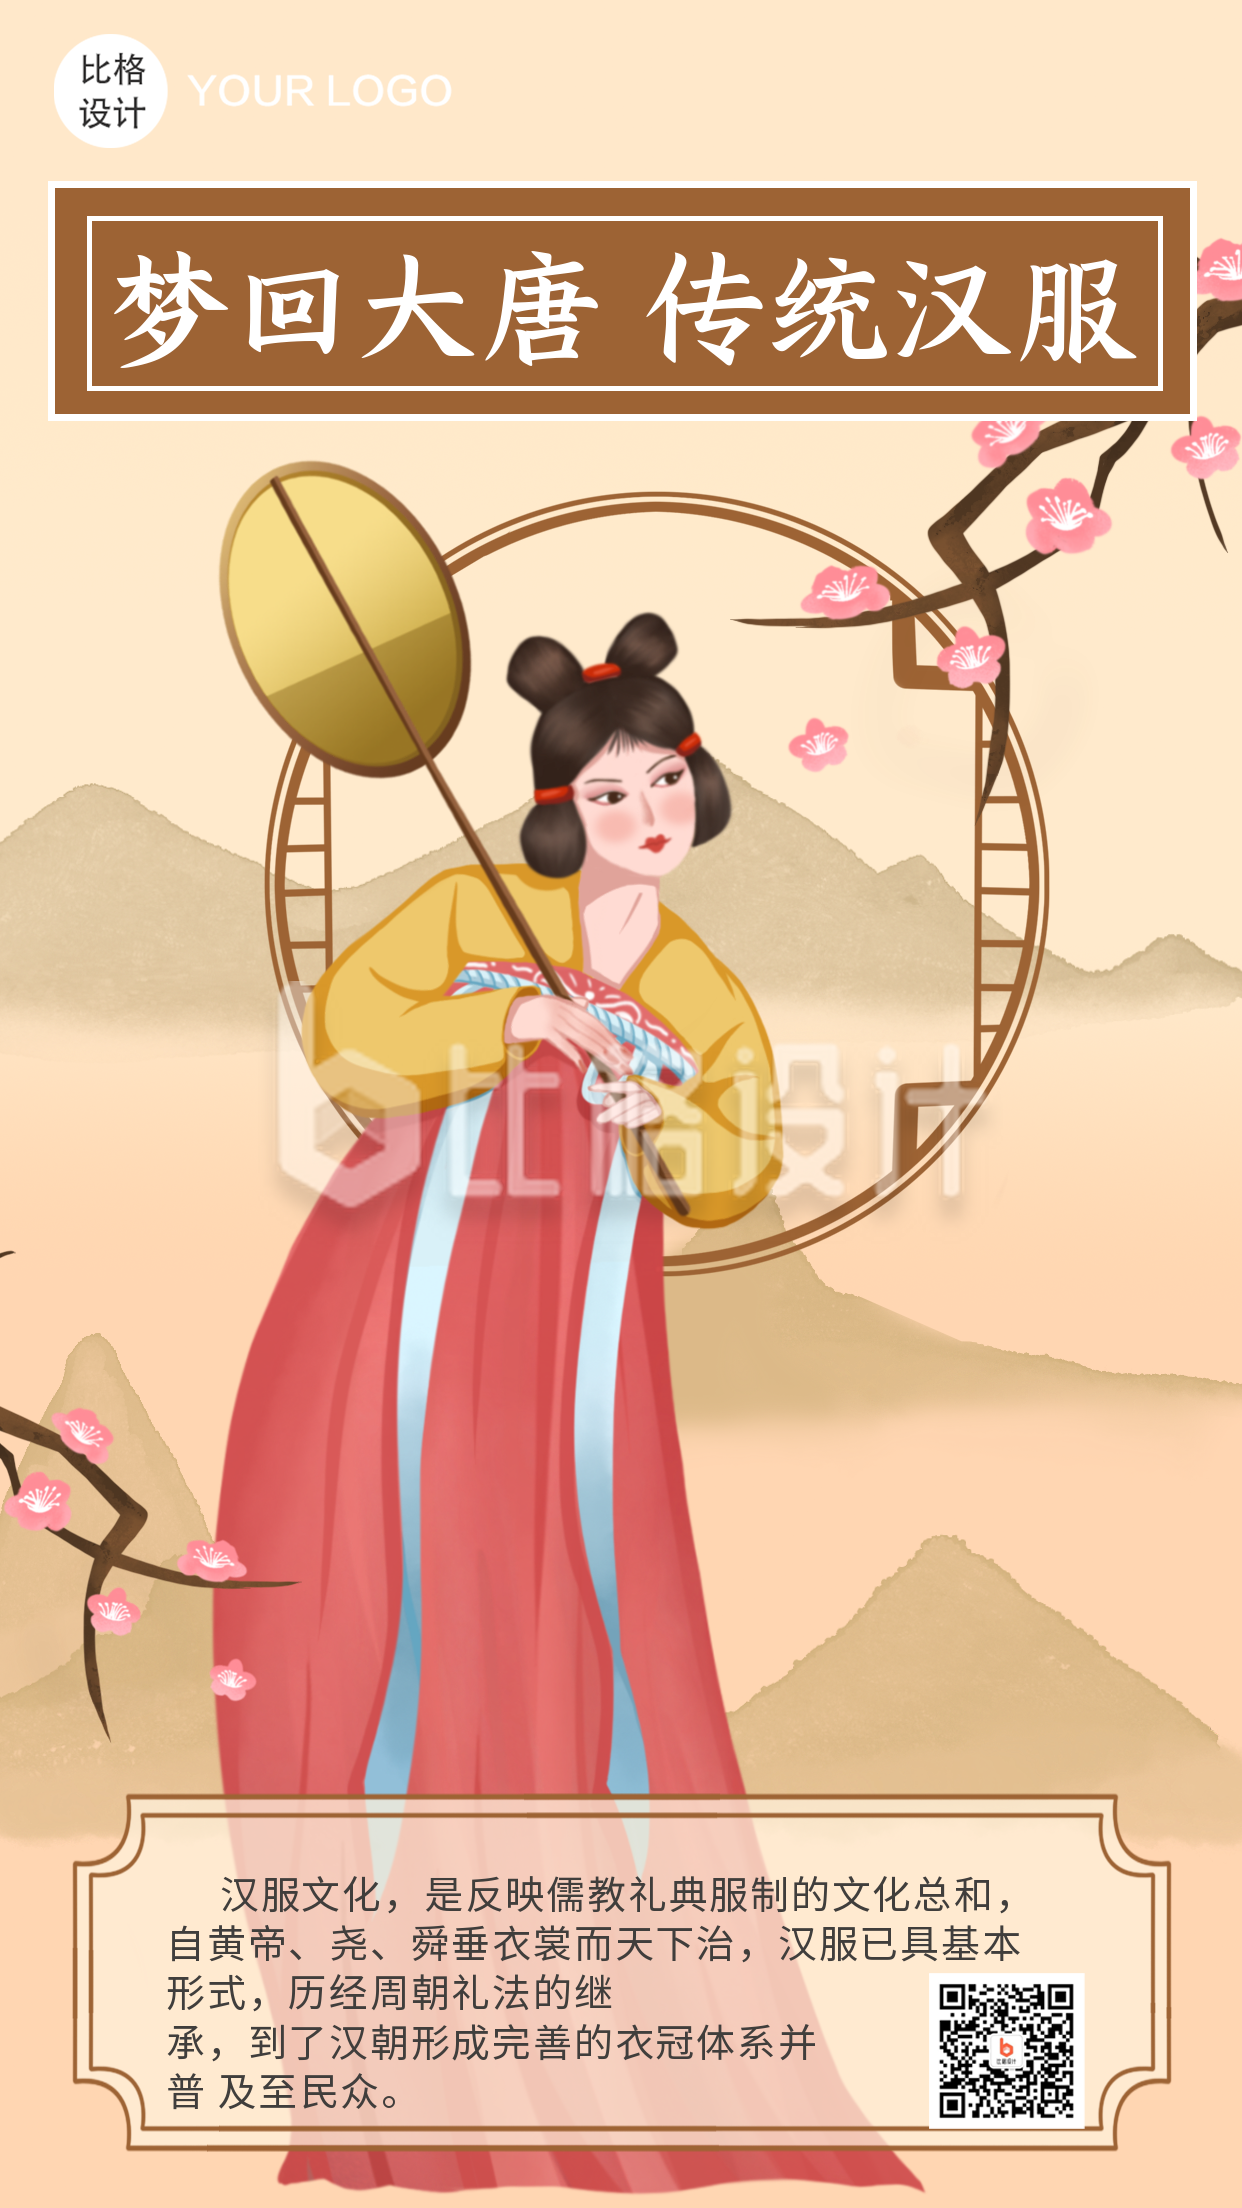 梦回大唐传统服饰文化古风汉服穿搭推荐中国风手绘人物手机海报